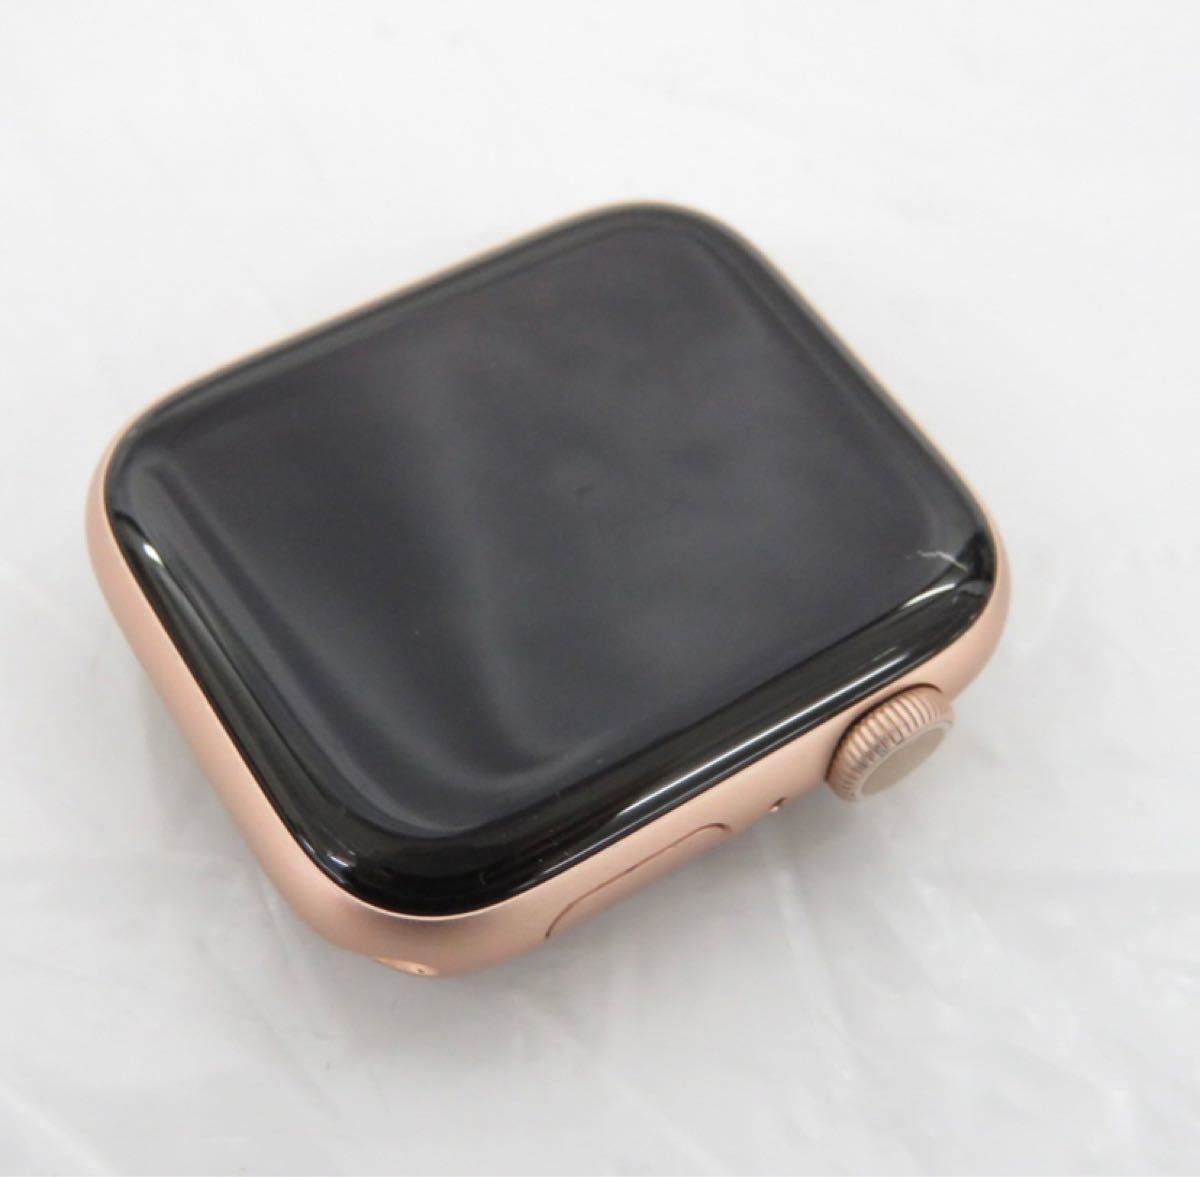 【美品】歳末特別価格:29800 Apple Watch Series 5 バッテリー94%